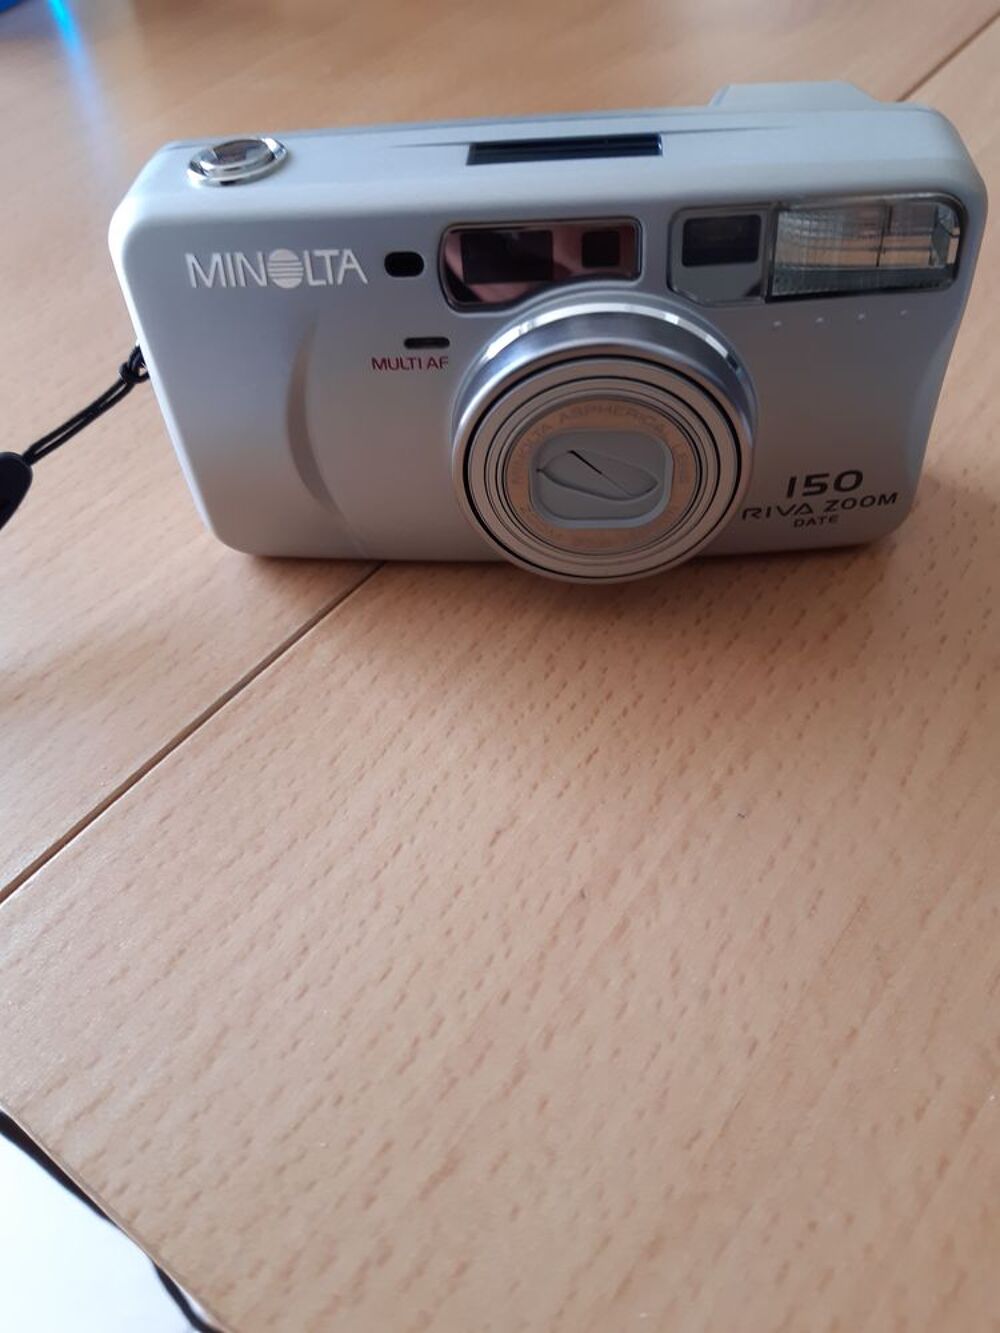 Appareil photo Minolta 150 avec zoom Audio et hifi